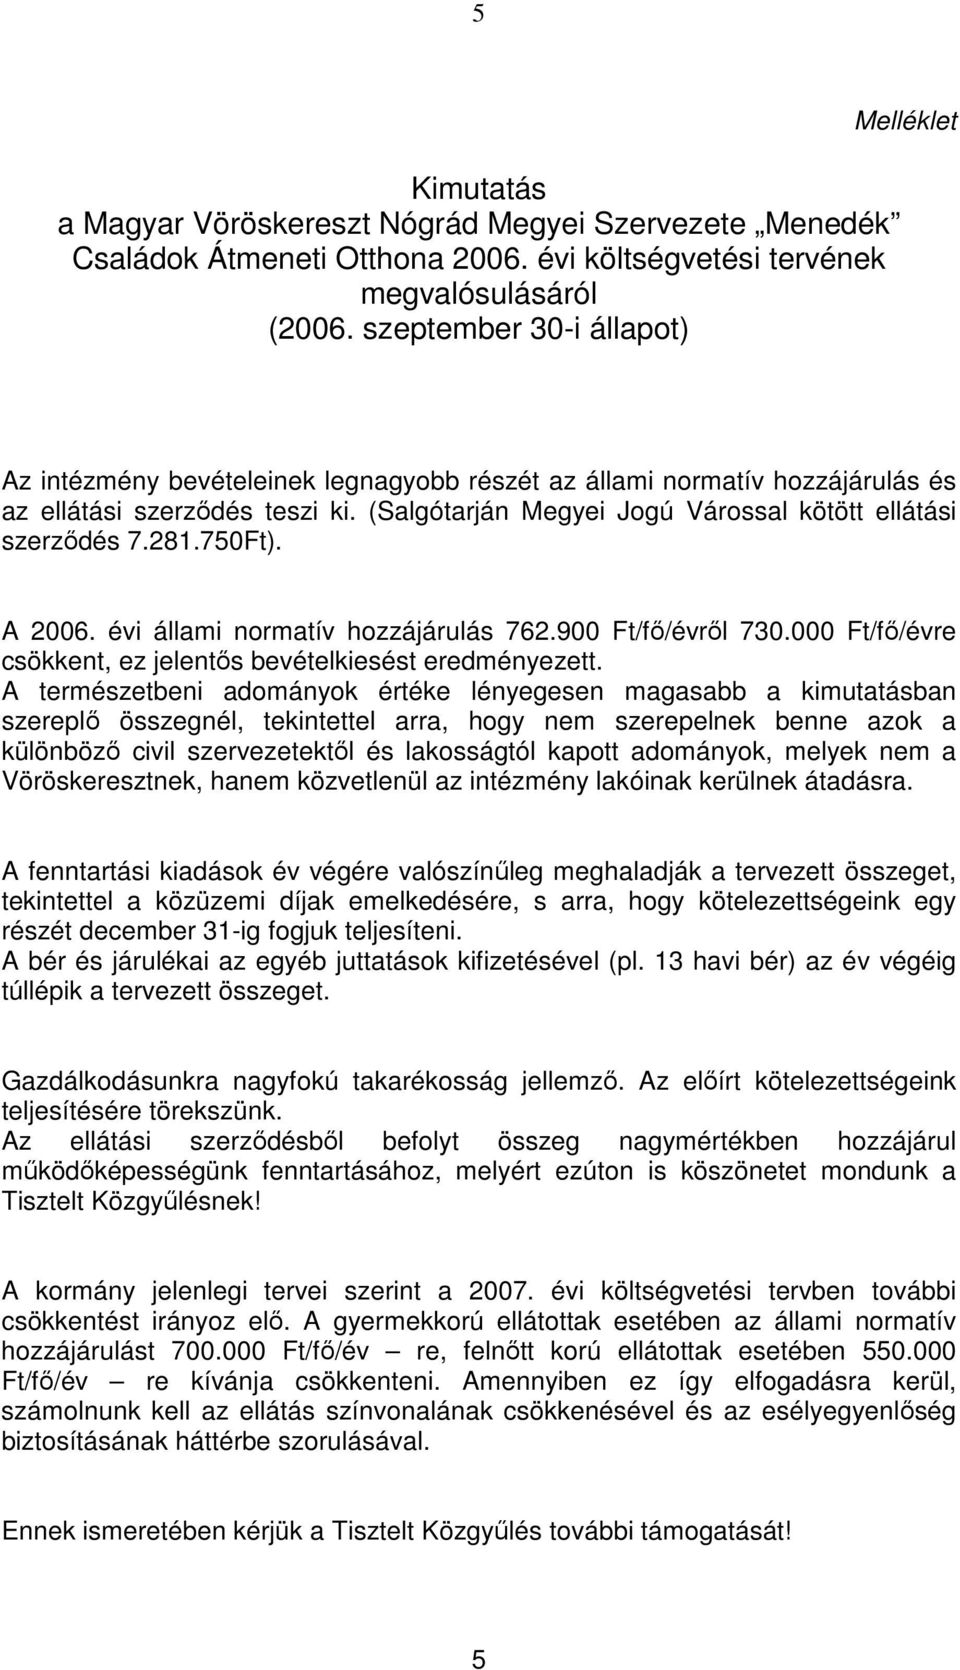 (Salgótarján Megyei Jogú Várossal kötött ellátási szerzıdés 7.281.750Ft). A 2006. évi állami normatív hozzájárulás 762.900 Ft/fı/évrıl 730.